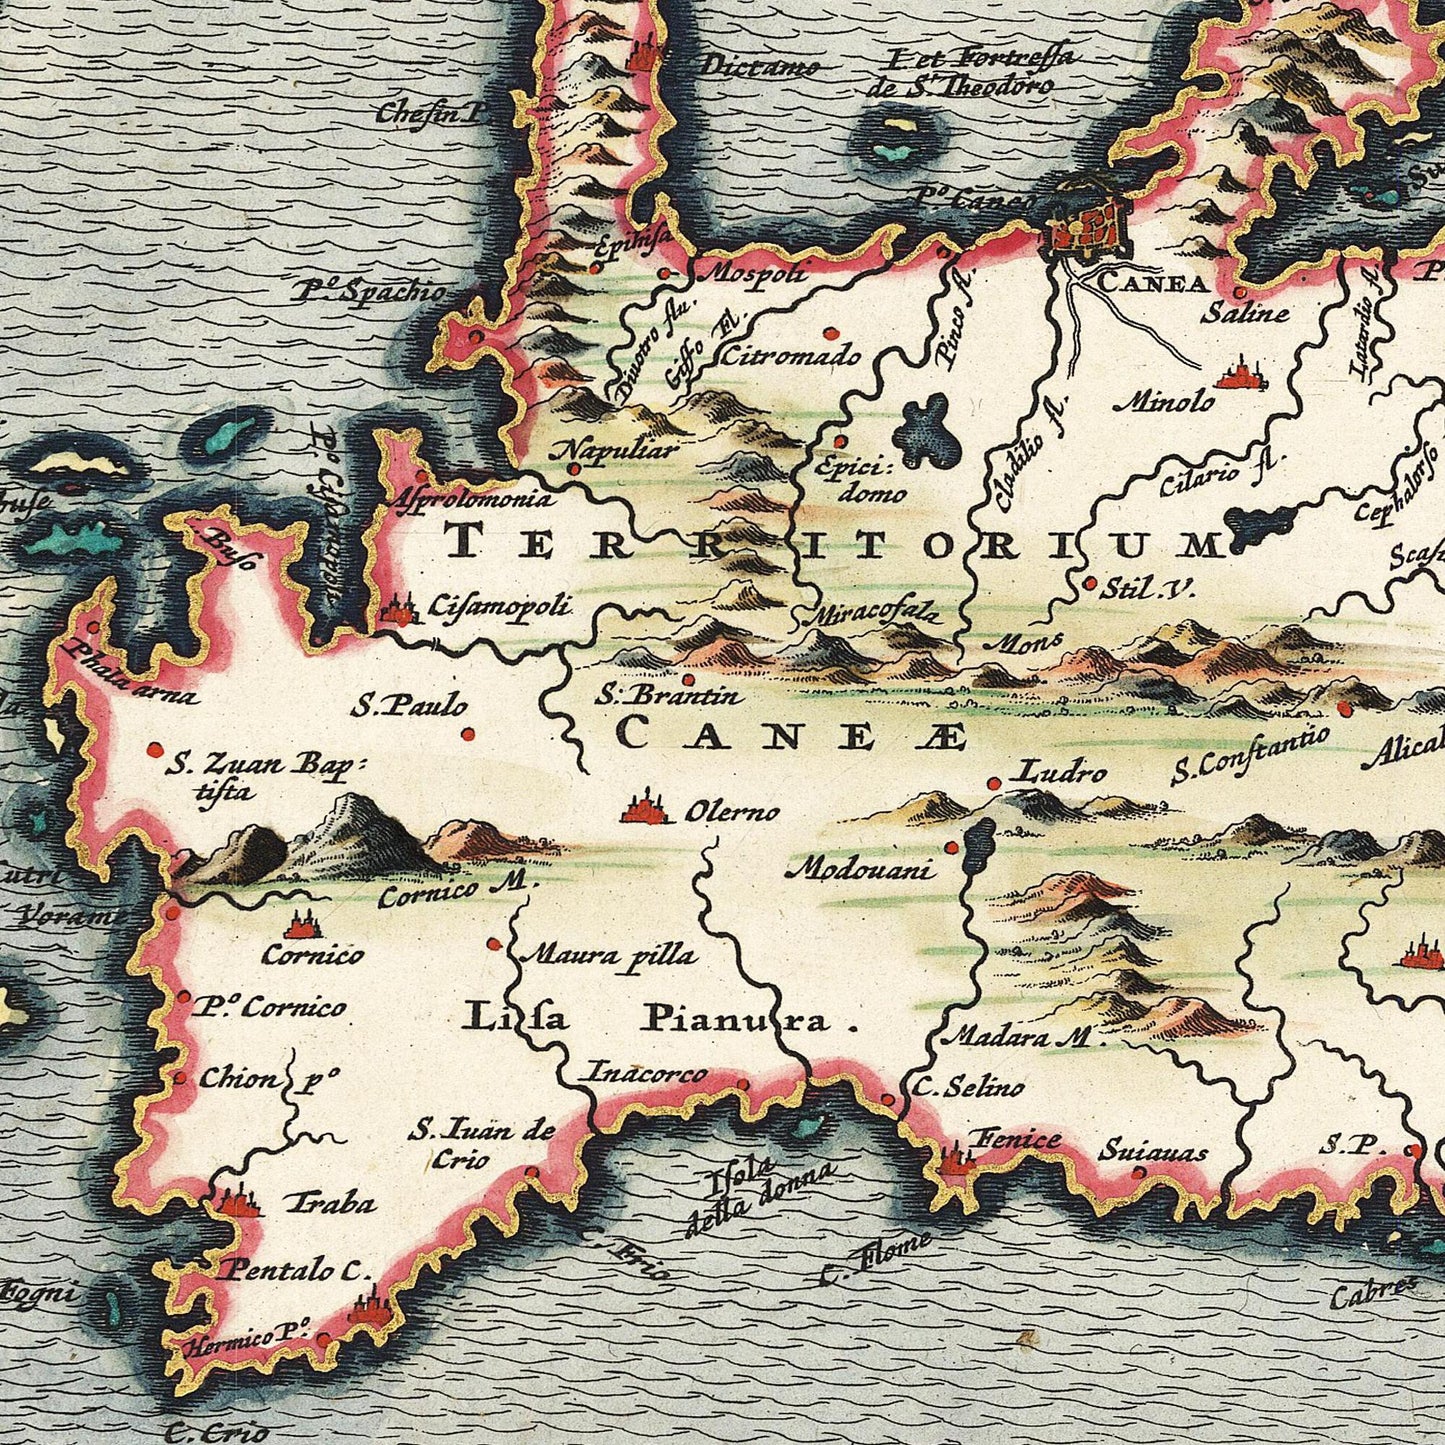 Historische Landkarte Kreta um 1668